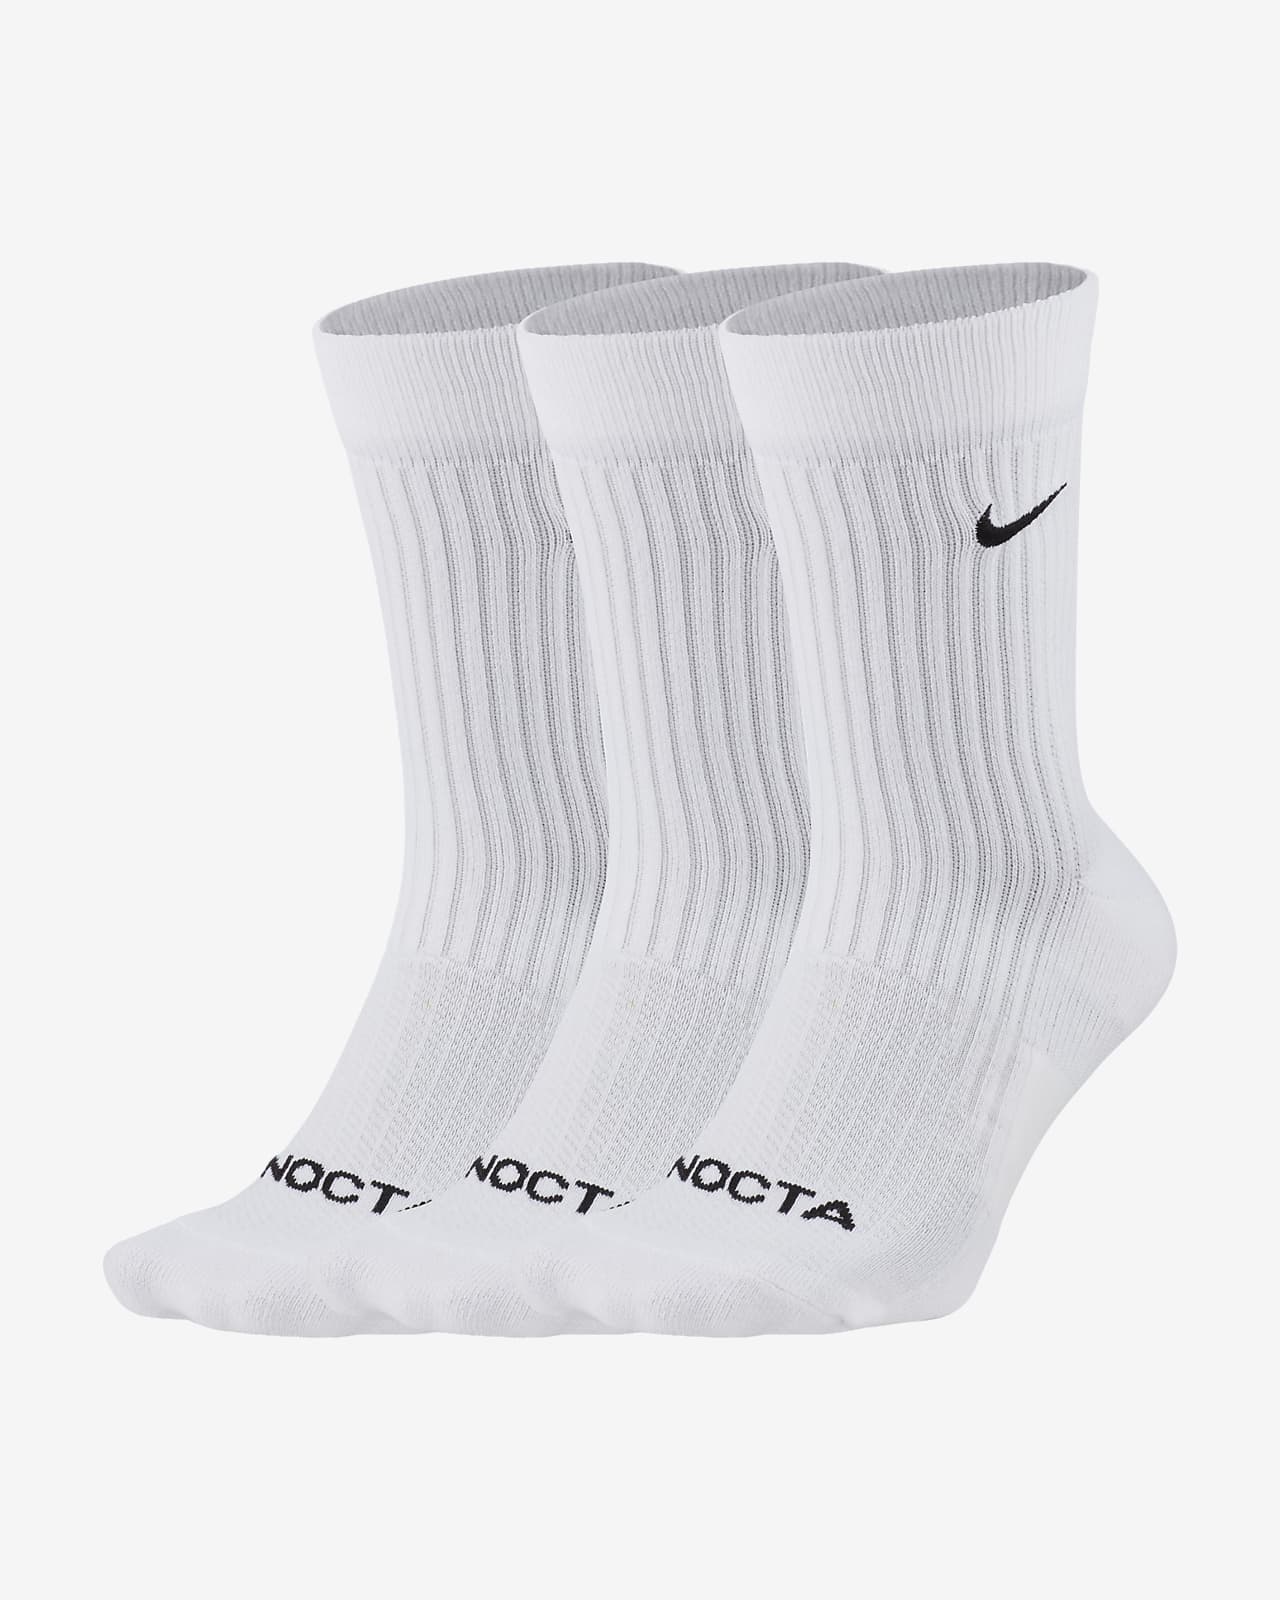 NOCTA Crew-Socken (3 Paar)